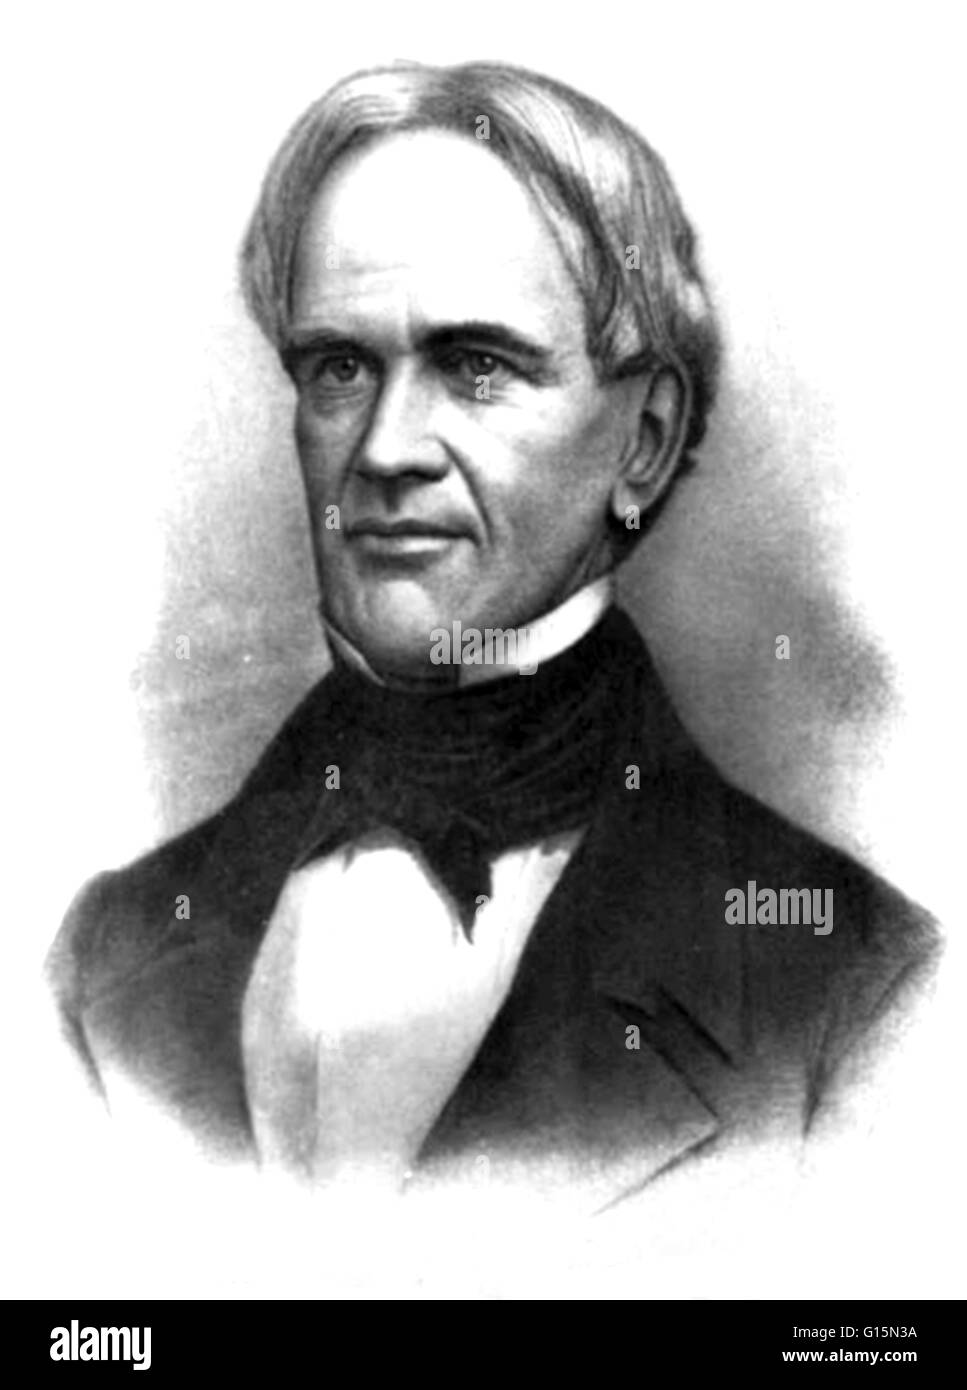 Horace Mann (4. Mai 1796 - 2. August 1859) war eine amerikanische Ausbildung Reformer. Als Politiker war er in das Repräsentantenhaus von Massachusetts von 1827 bis 1833. Er diente in den Senat von Massachusetts von 1834 bis 1837. 1848, nach seinem Dienst als Se Stockfoto